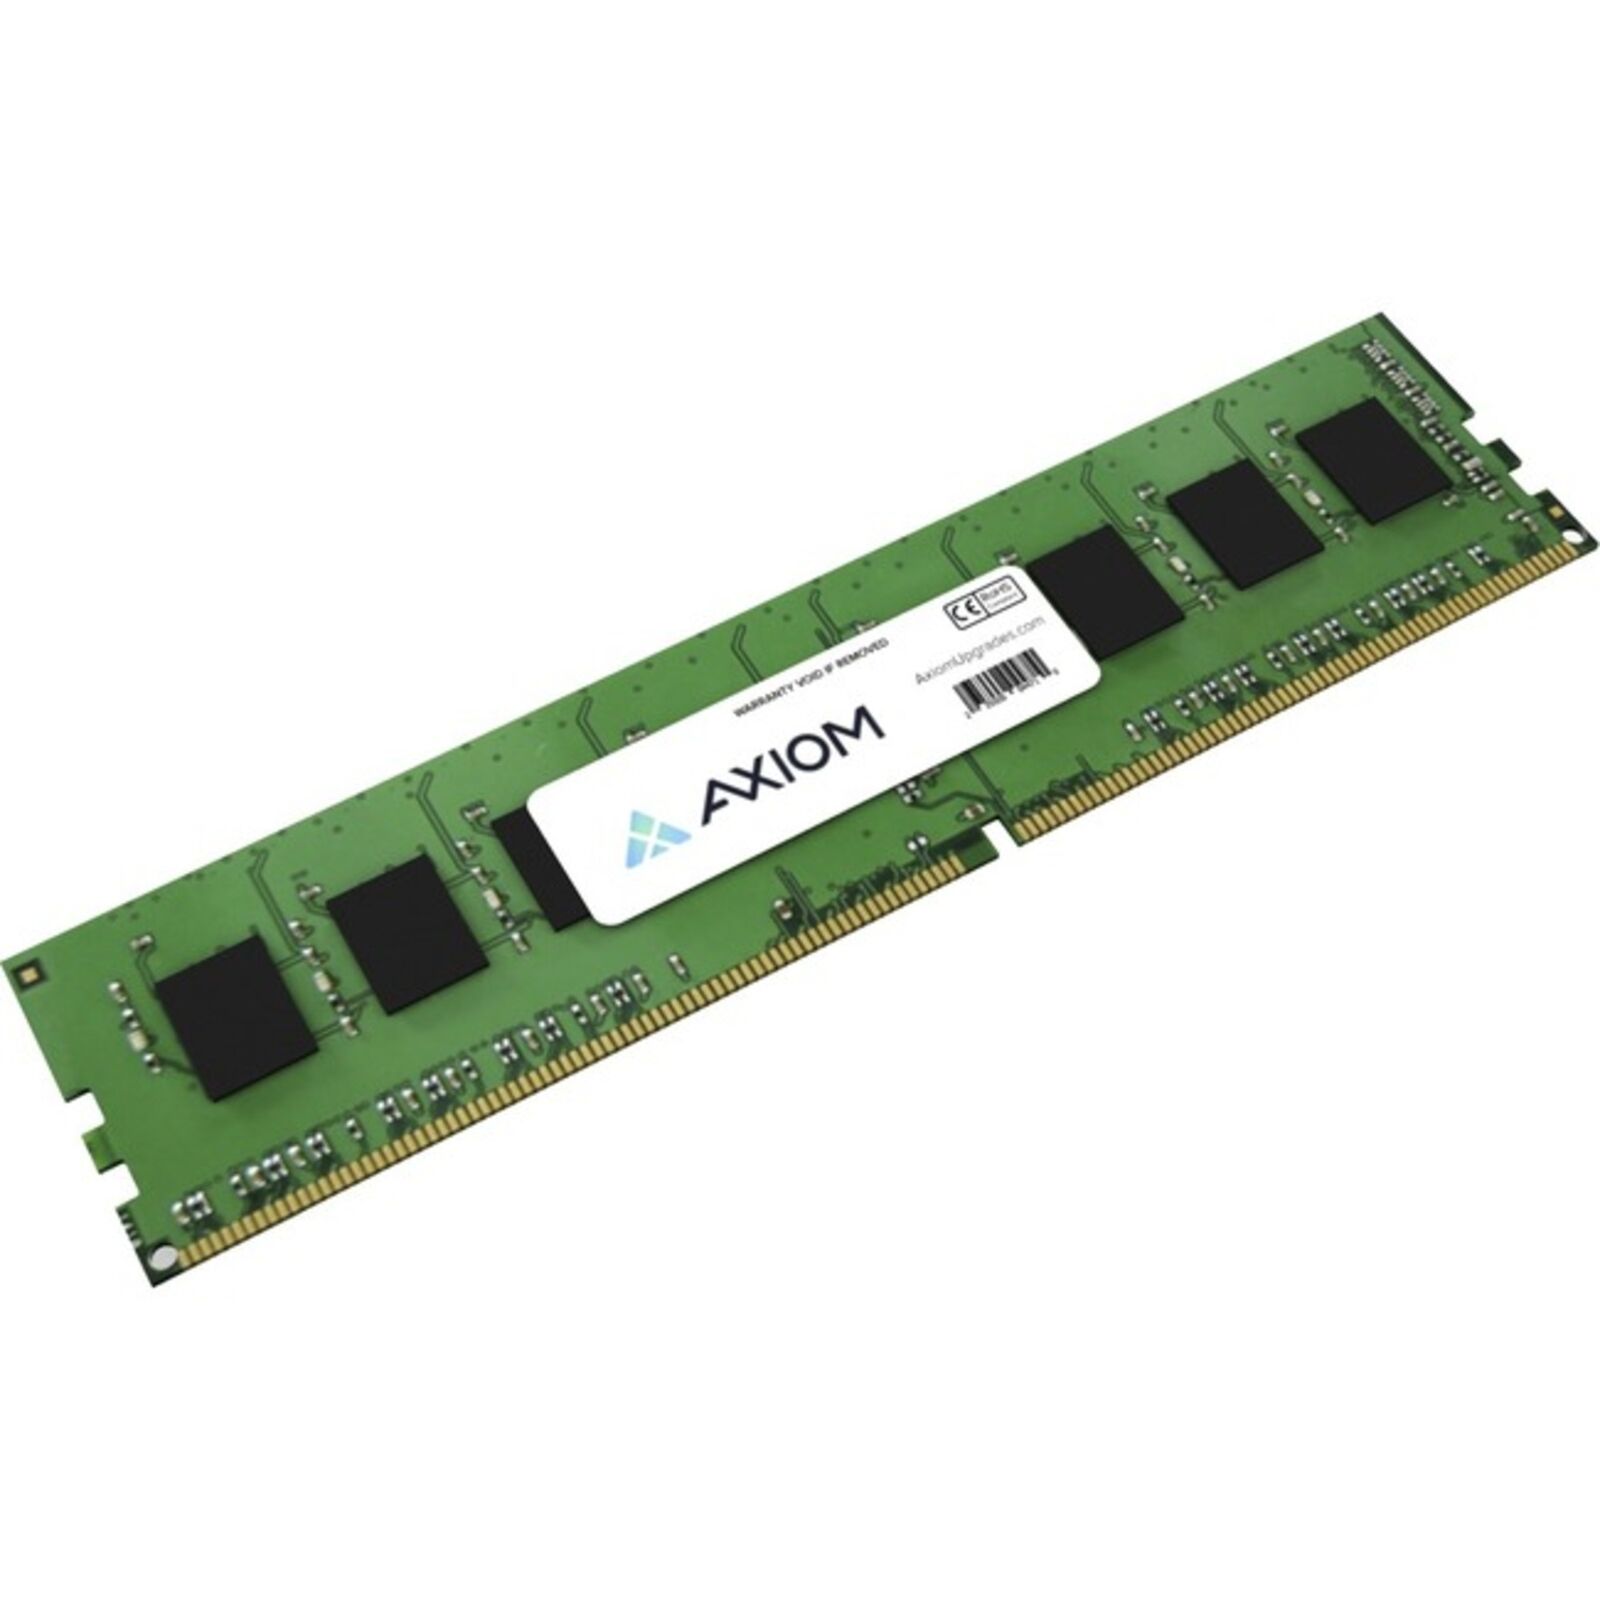 Axiom Memory - AB883075-AX - Axiom 32GB DDR5 SDRAM Memory Module - For Desktop